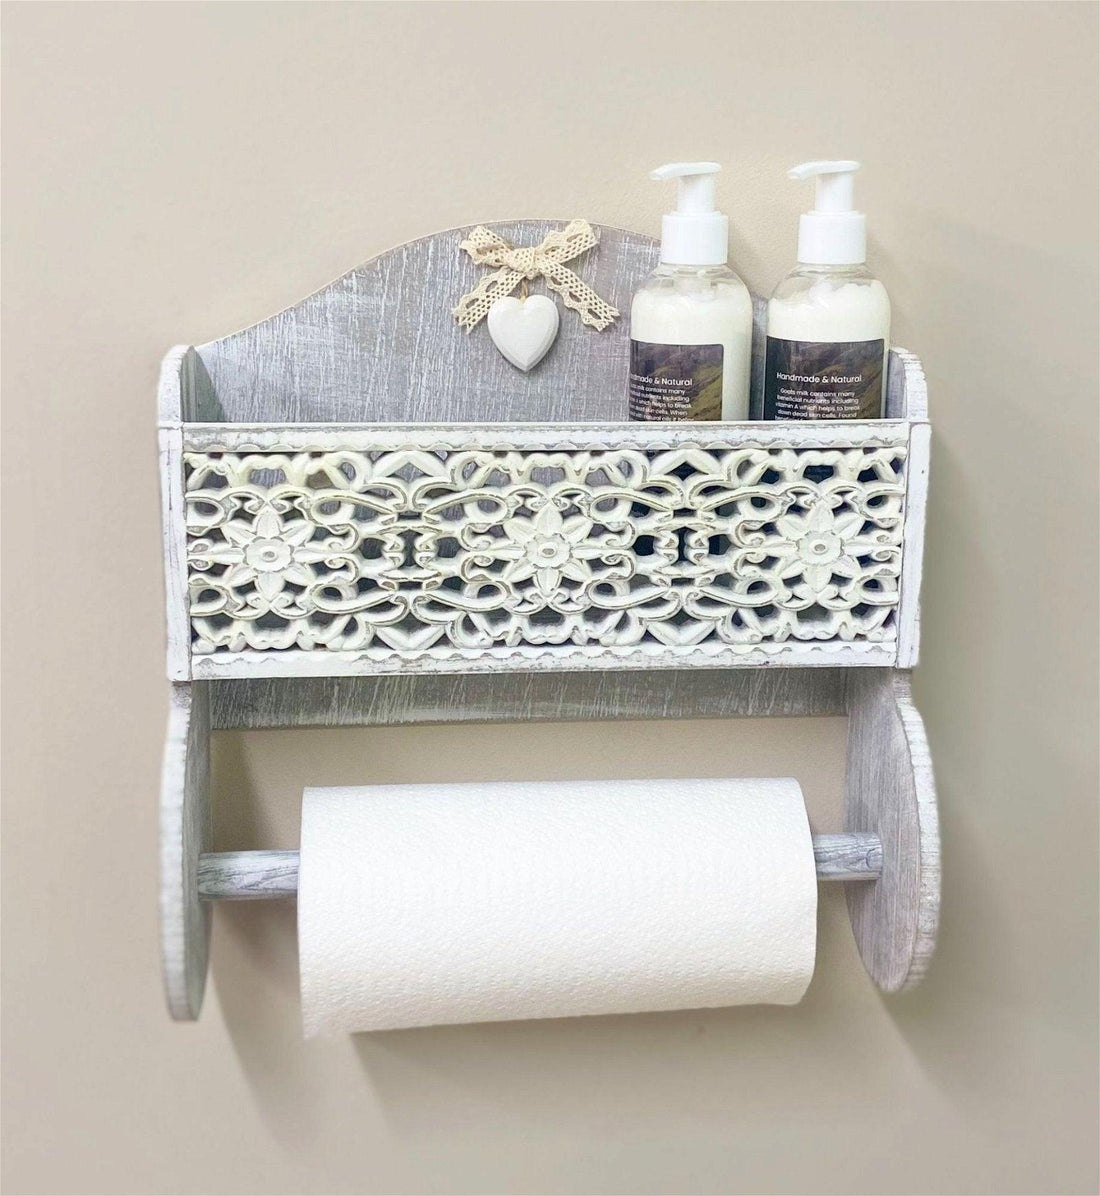 Grey Wooden Kitchen Towel Holder With Cutout Pattern Shelf - £41.99 - Kitchen Storage 